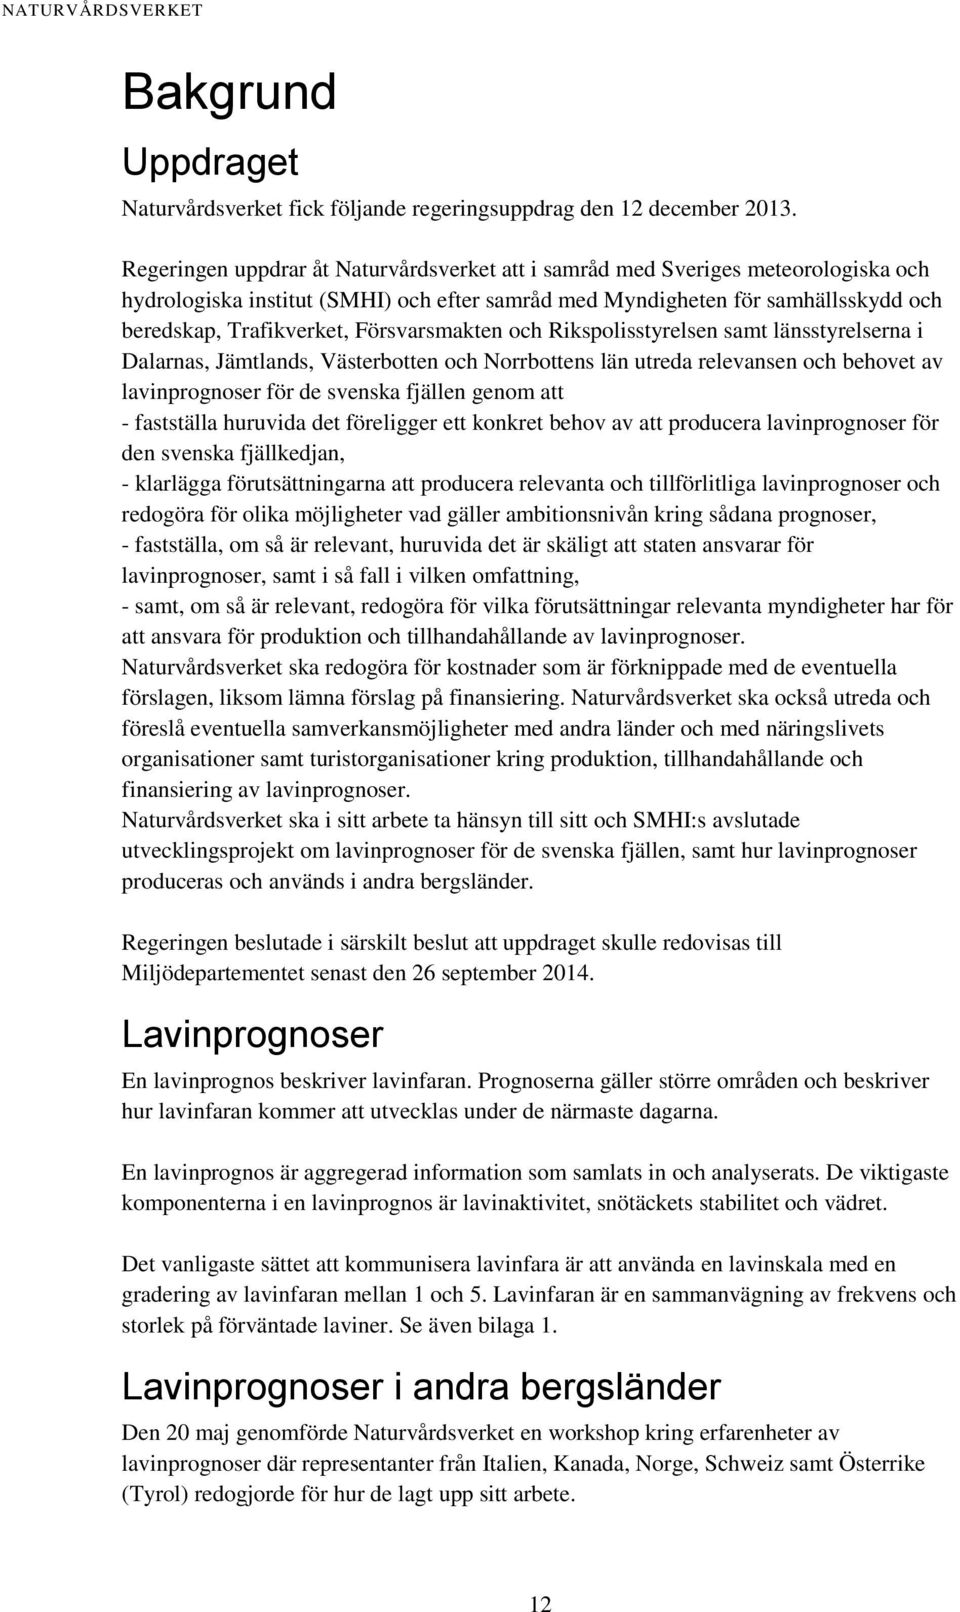 Försvarsmakten och Rikspolisstyrelsen samt länsstyrelserna i Dalarnas, Jämtlands, Västerbotten och Norrbottens län utreda relevansen och behovet av lavinprognoser för de svenska fjällen genom att -